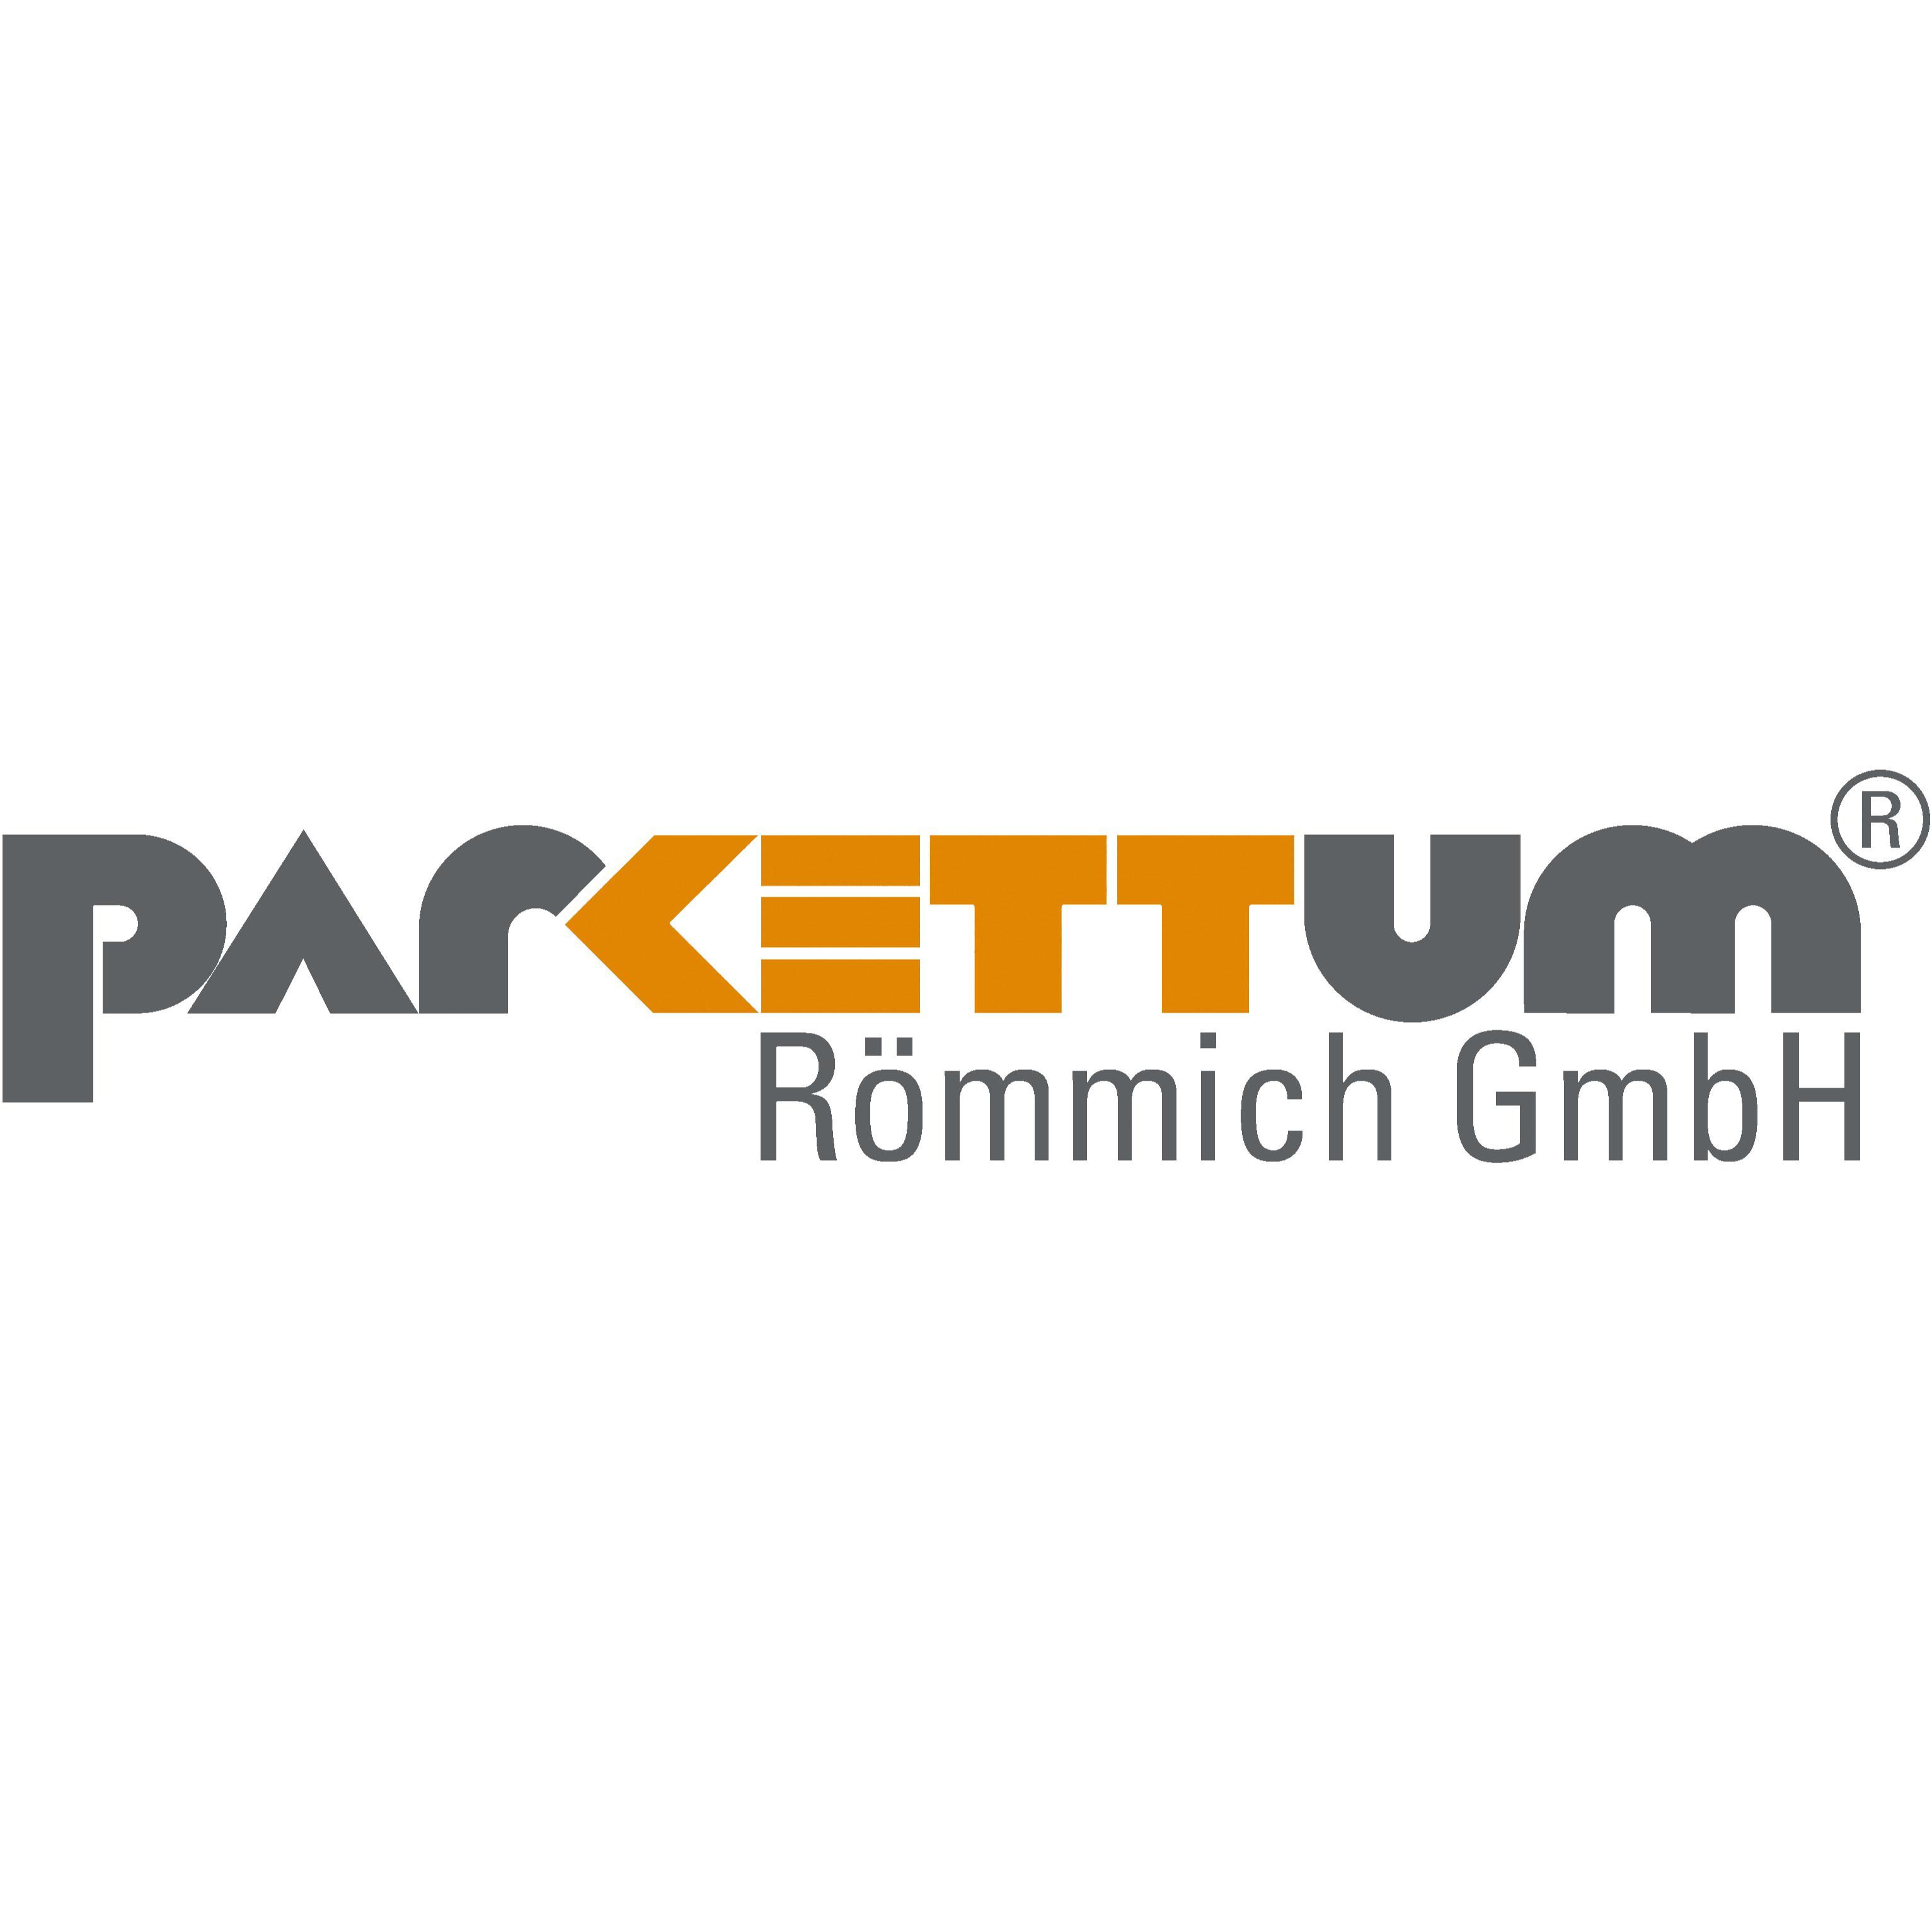 Parkettum Römmich GmbH in Göttingen - Logo